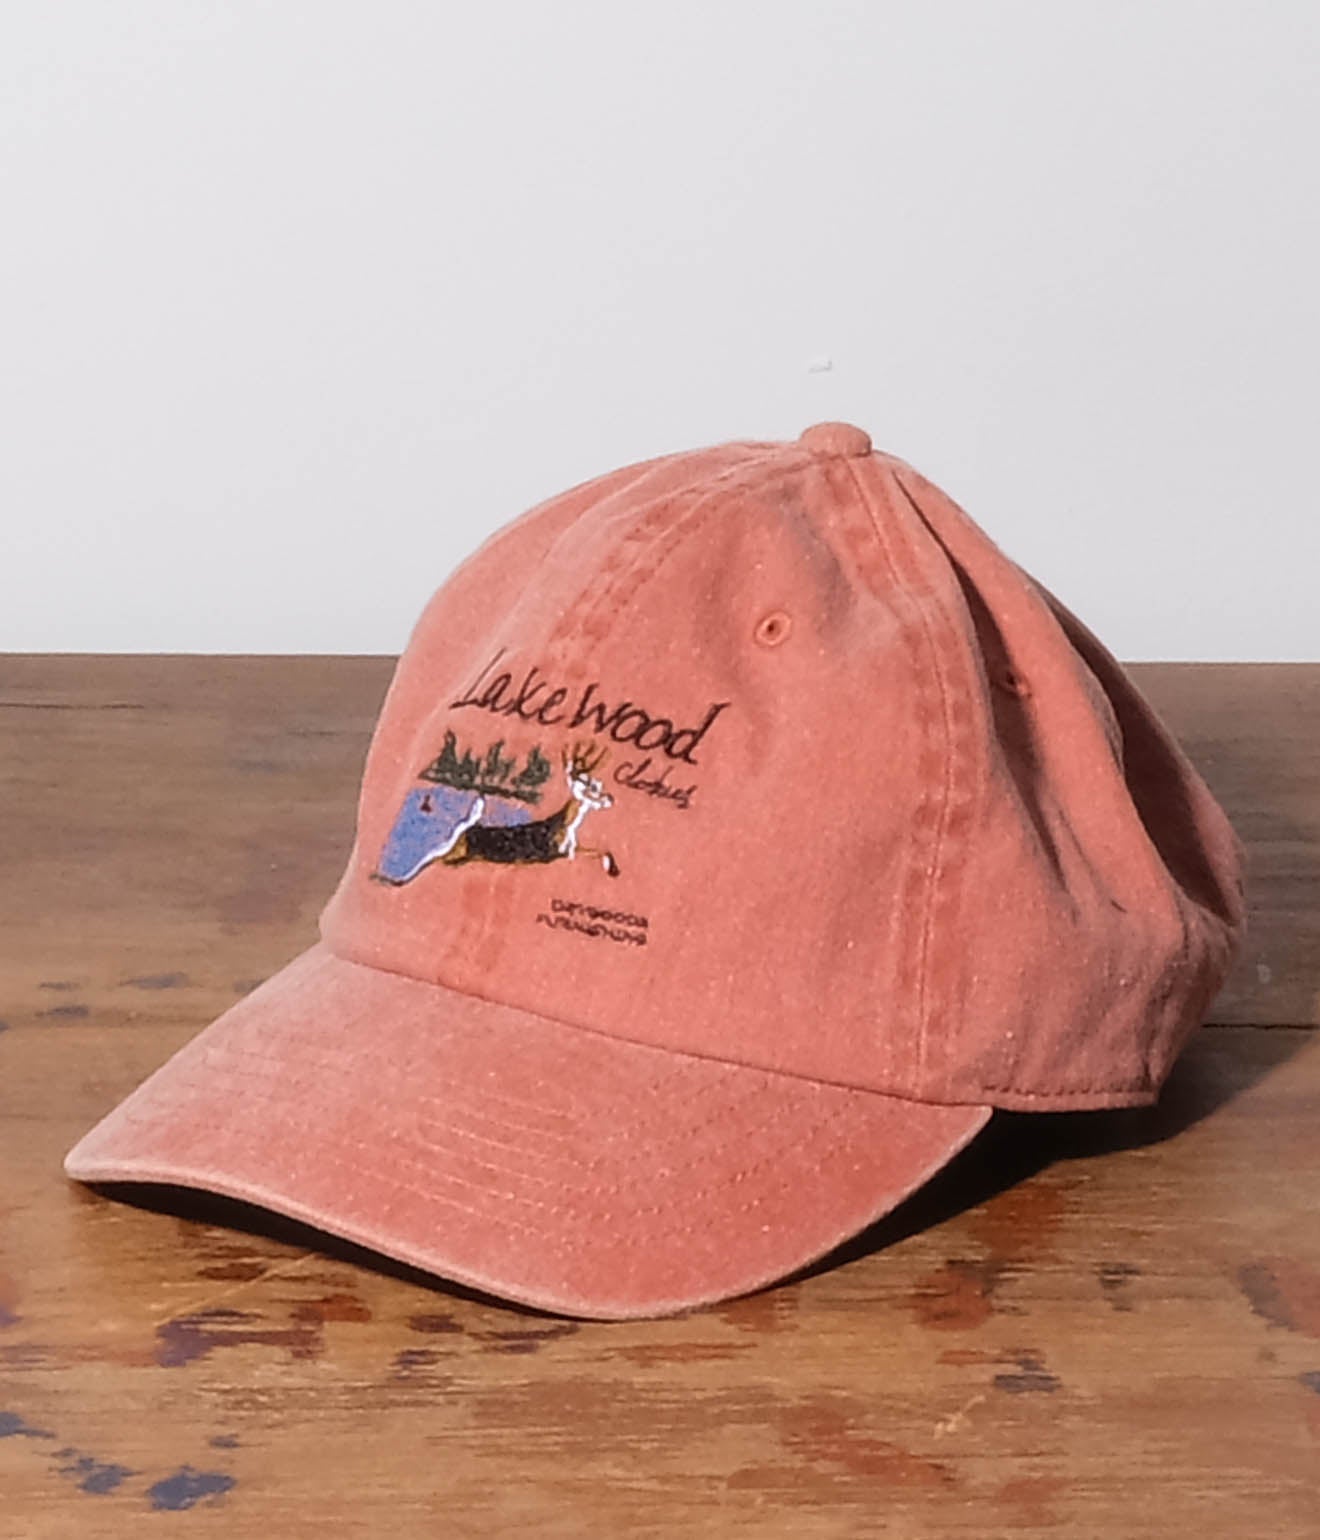 Souvenir Goods "Lakewood Clothing Souvenir Cap" (Orange)